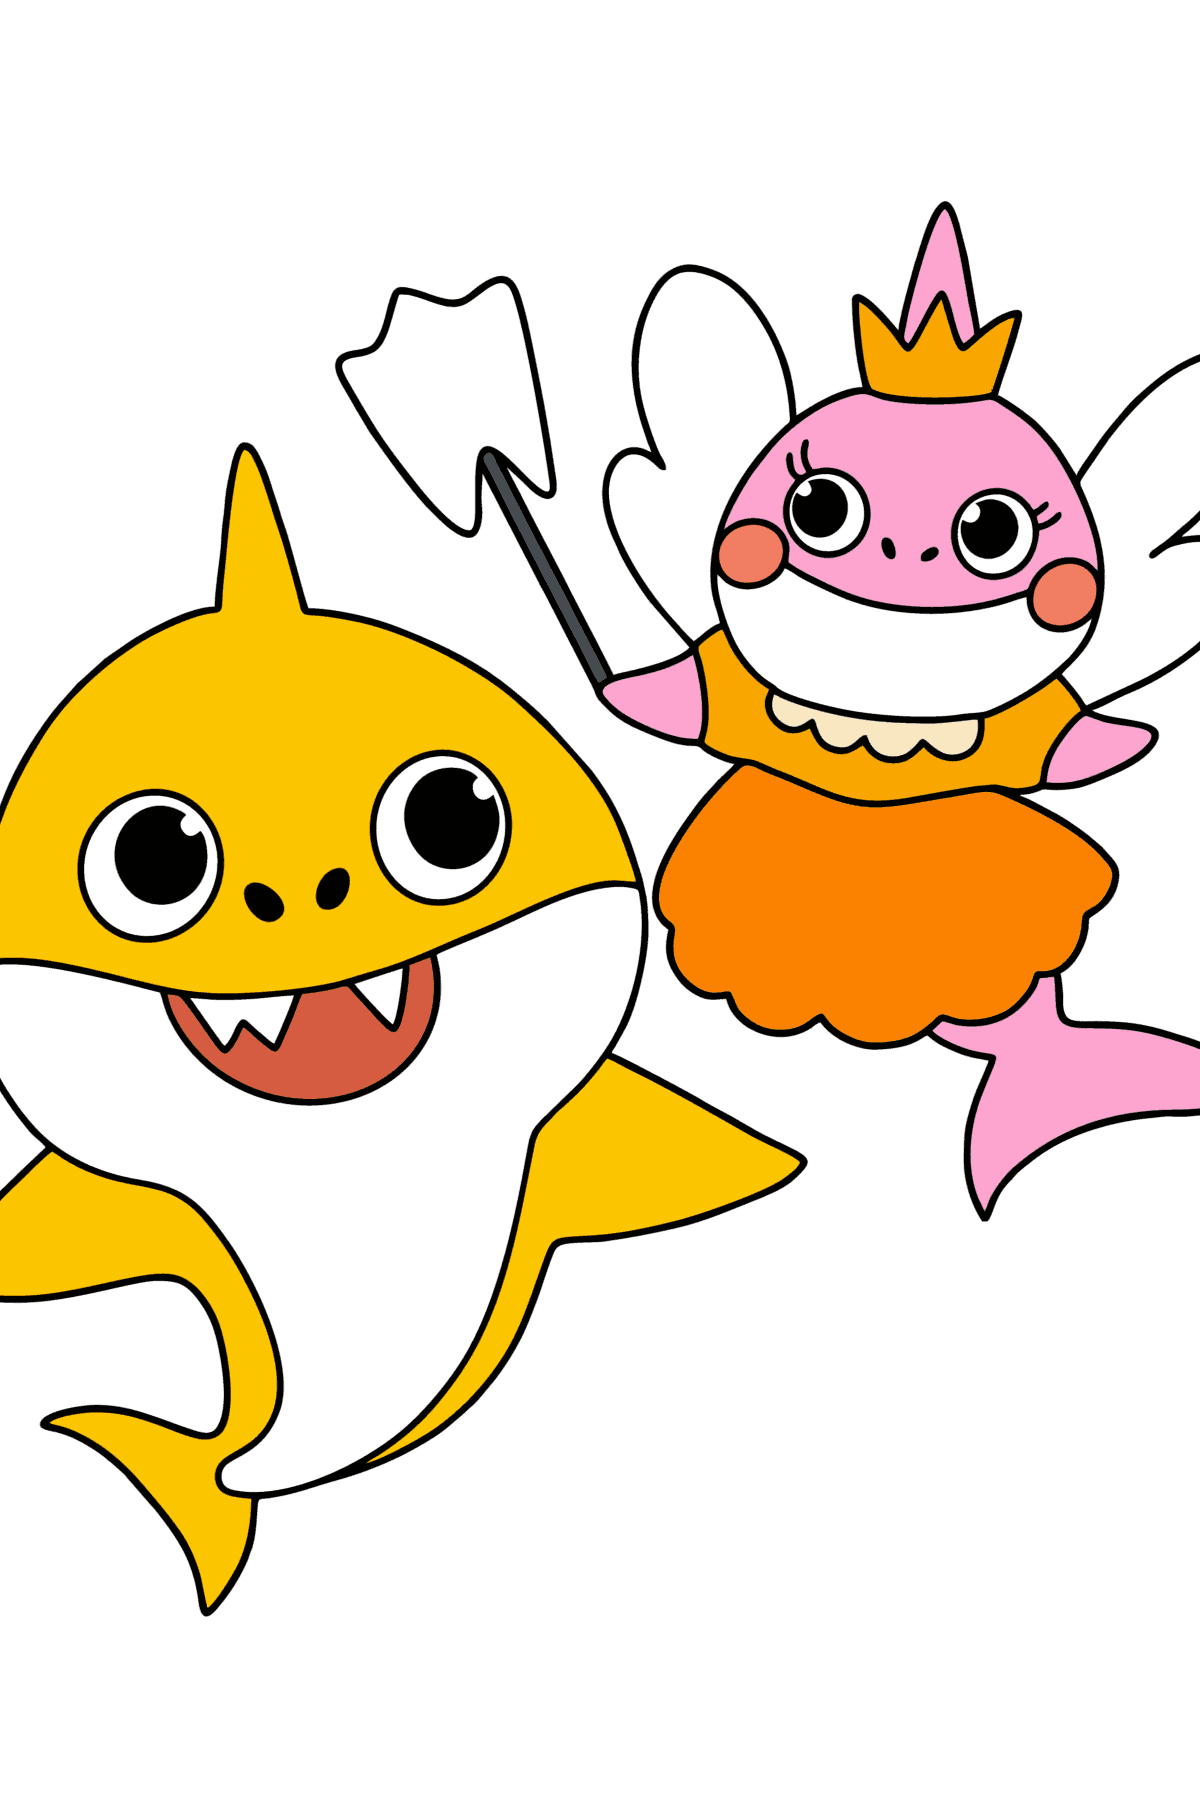 Tannfe og Baby Shark tegning til fargelegging - Tegninger til fargelegging for barn